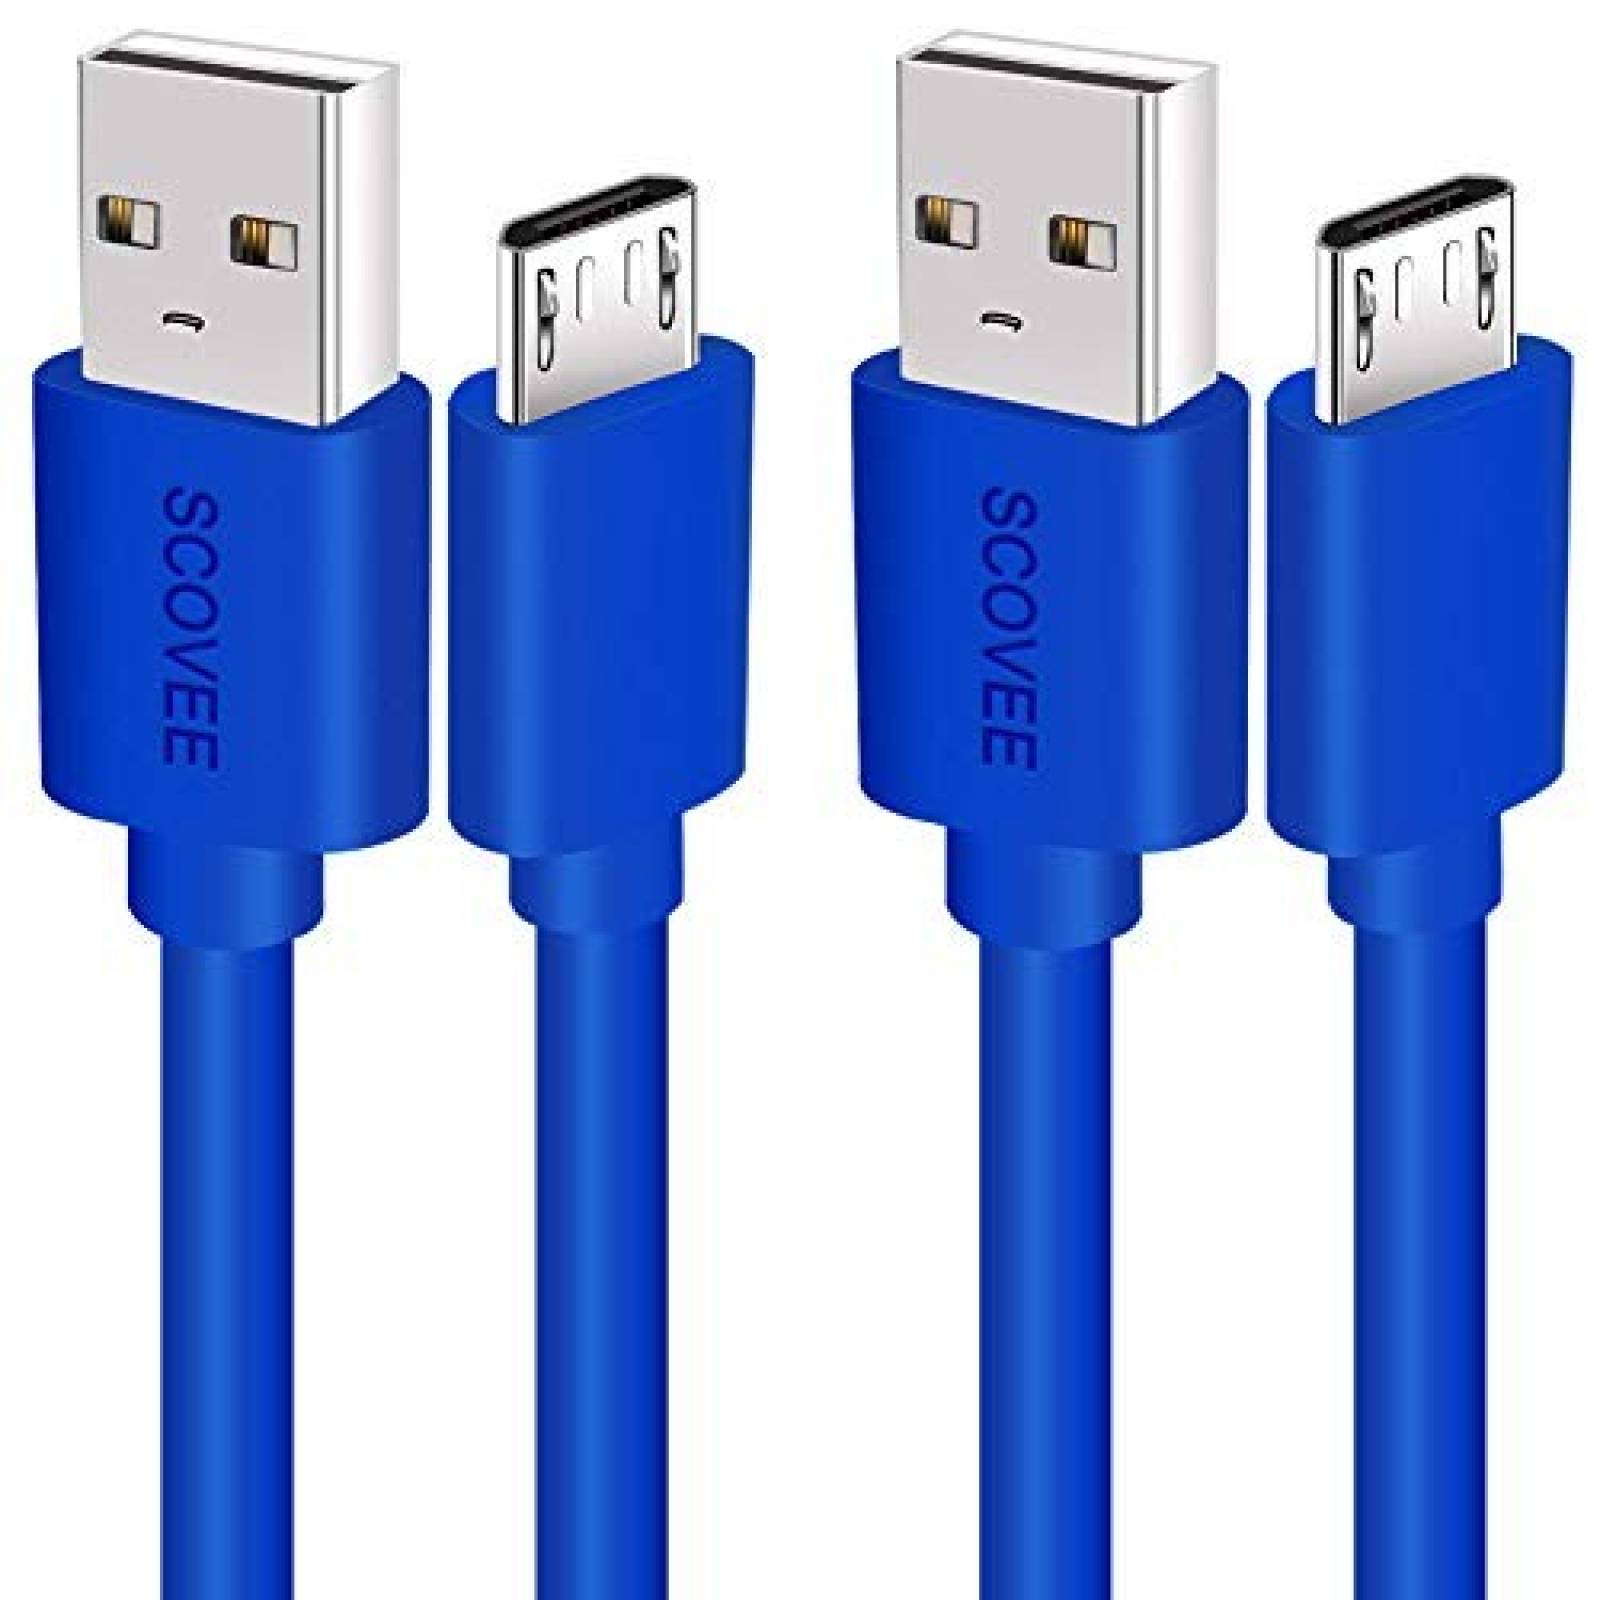 Cable cargador micro USB SCOVEE 2 unidades 10ft -azul